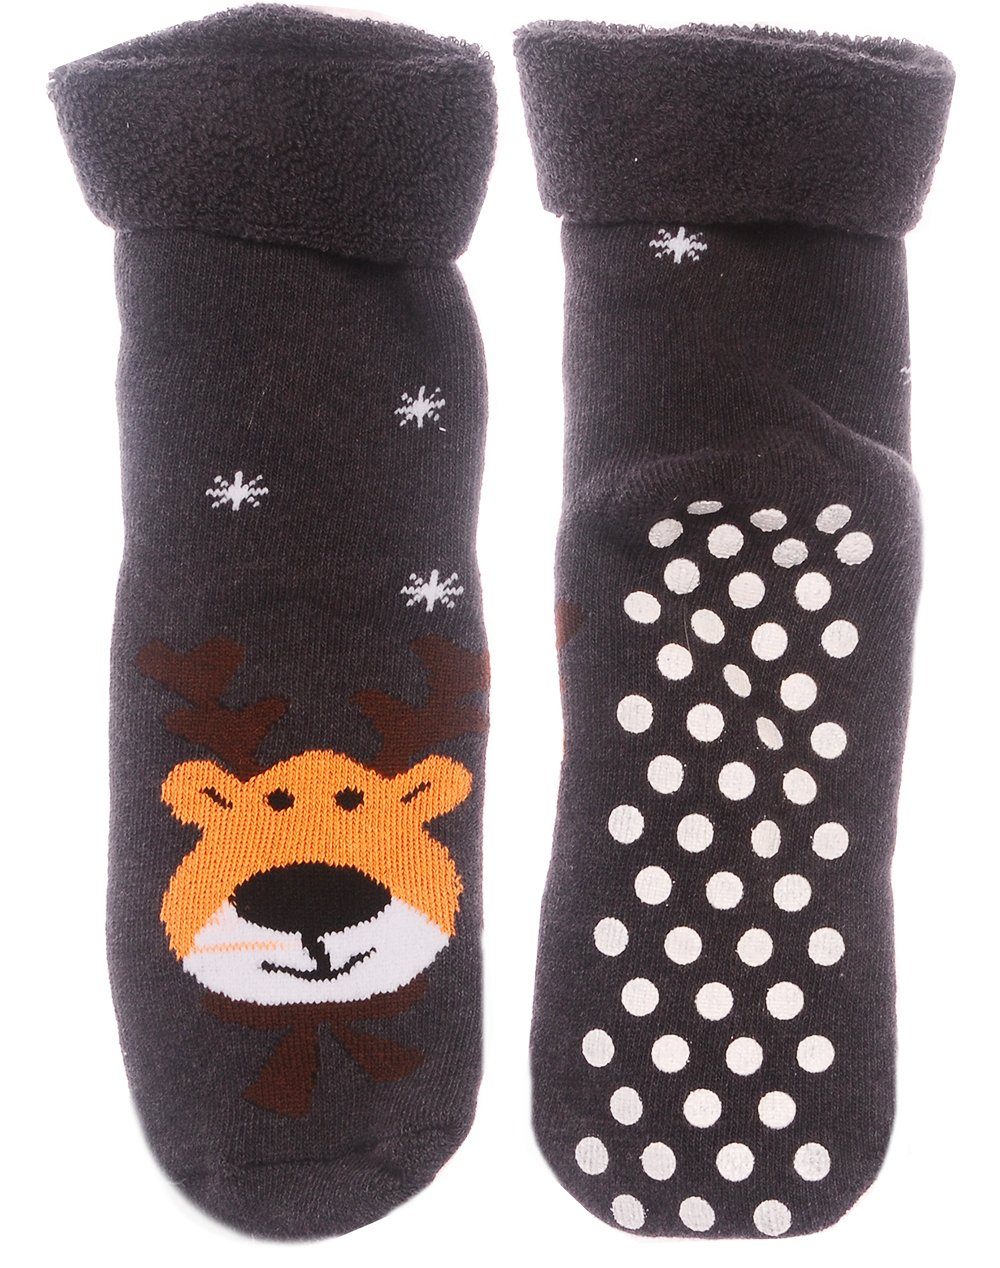 Martinex Thermosocken Socken Weihnachten Weihnachtssocken Antirutschsocken 35 38 warm und weich, für Erwachsene und Jugendliche